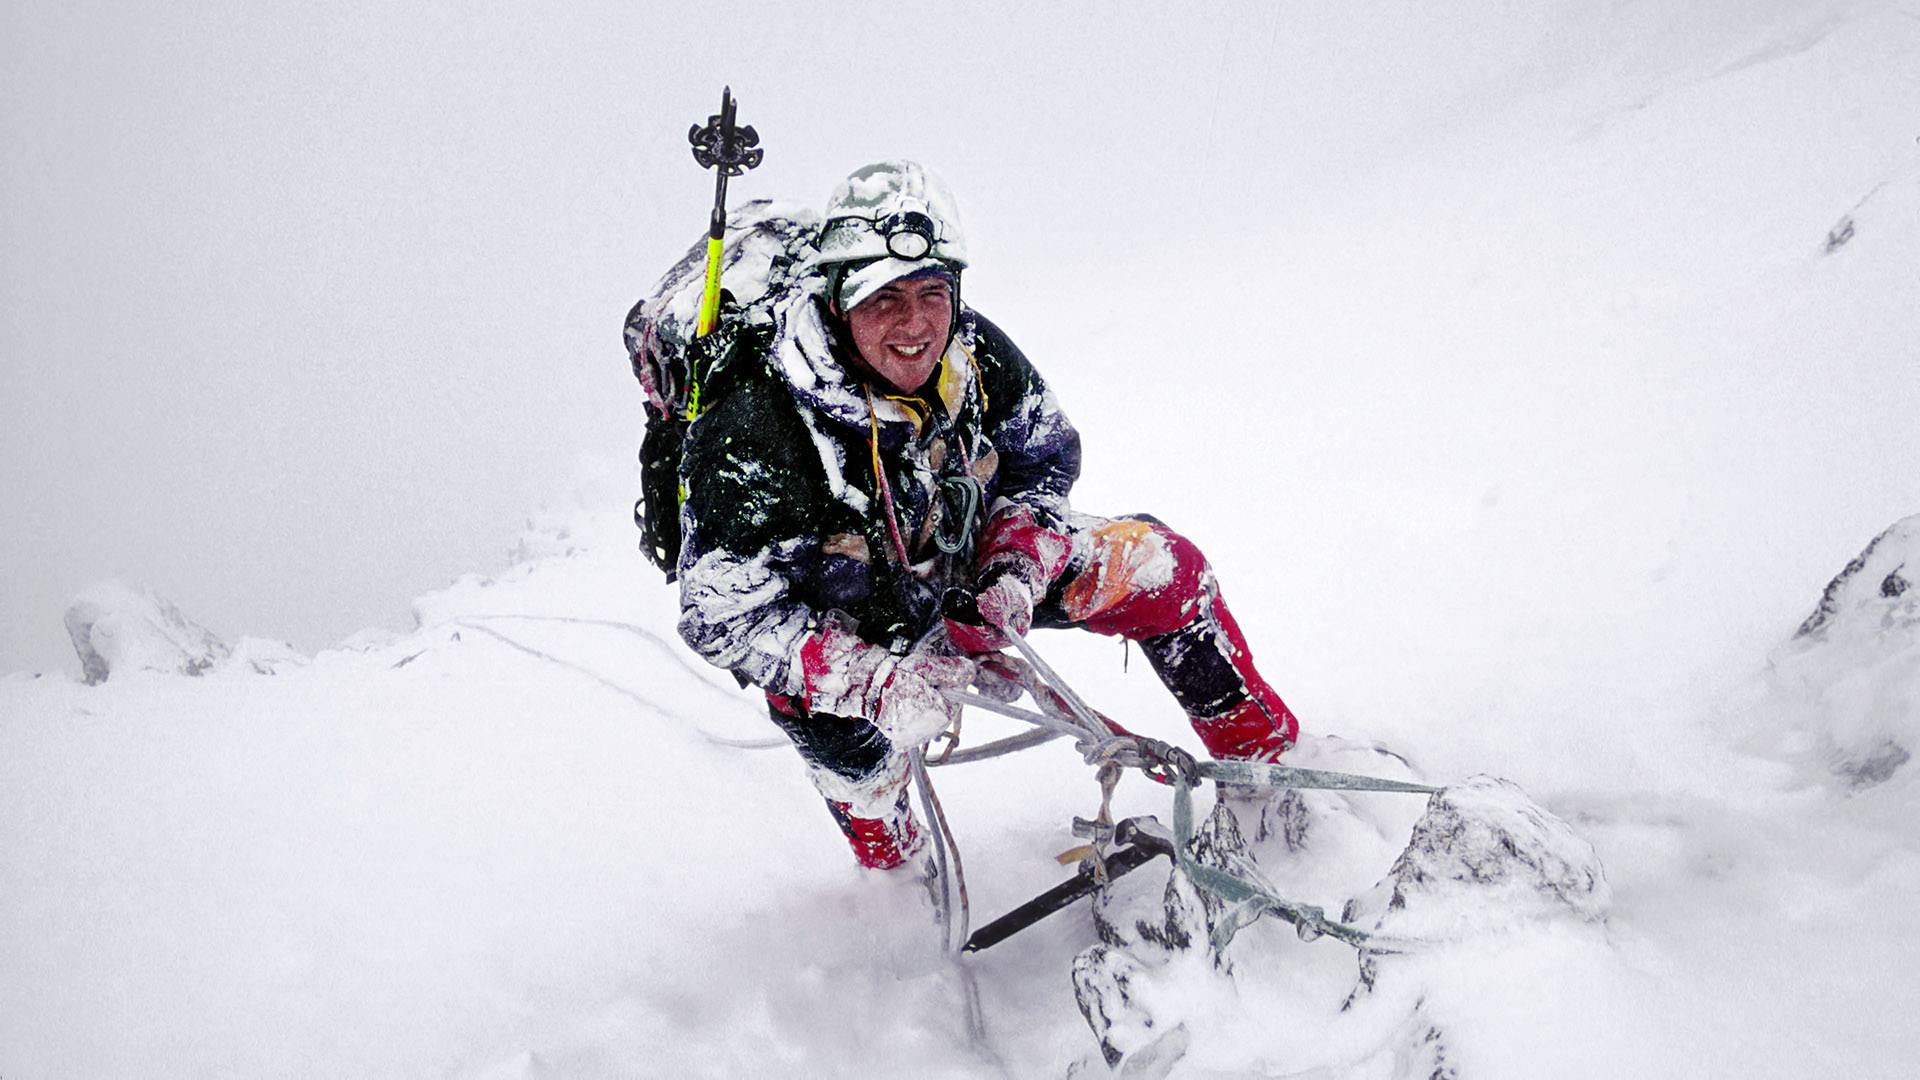 Expert bergbeklimmer aan het werk onder moeilijke omstandigheden